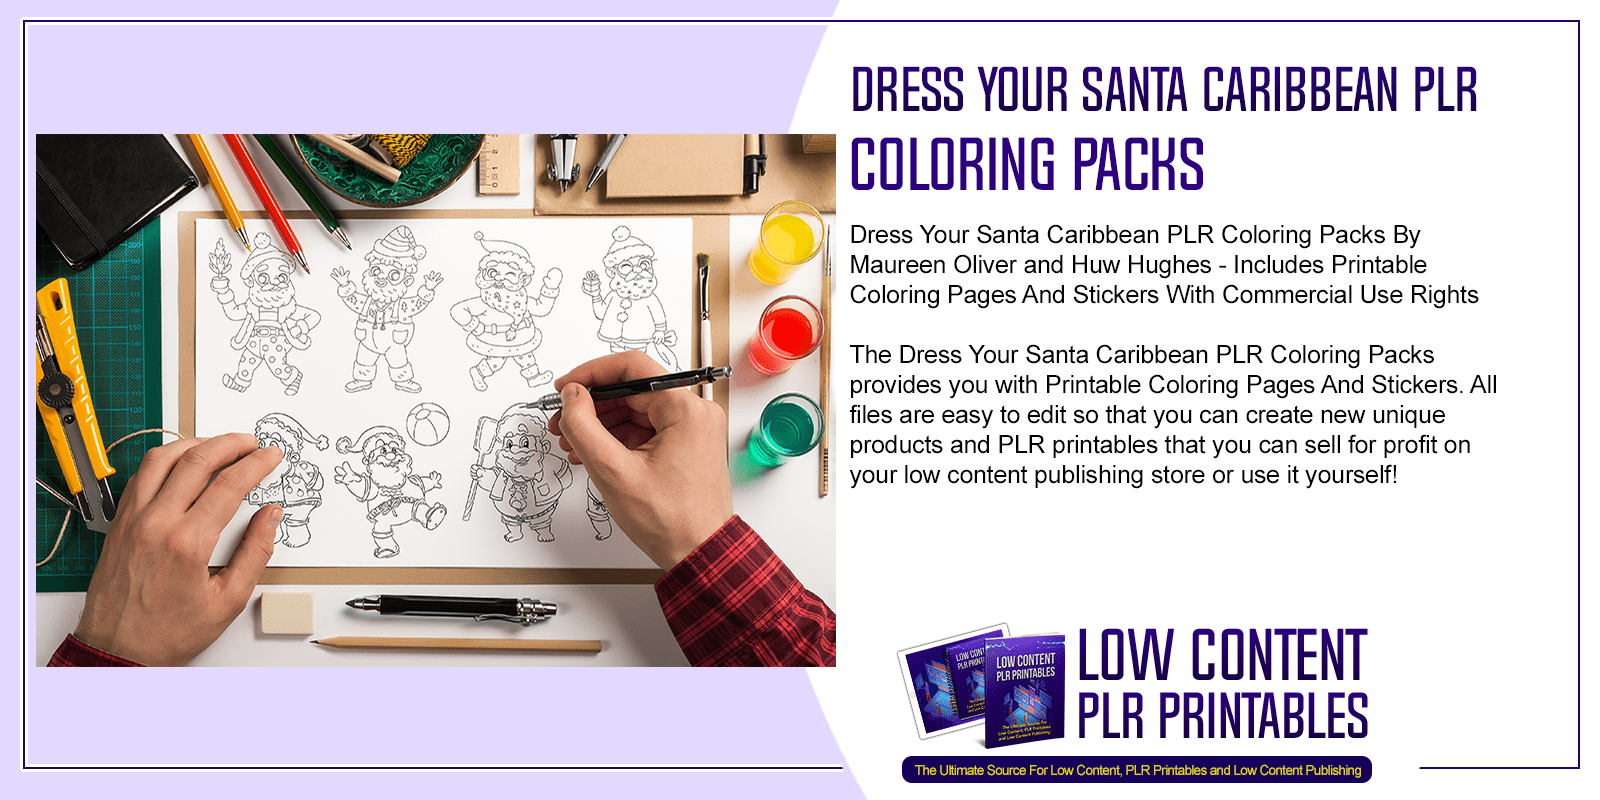 Dress Your Santa Caribbean PLR Coloring Packs